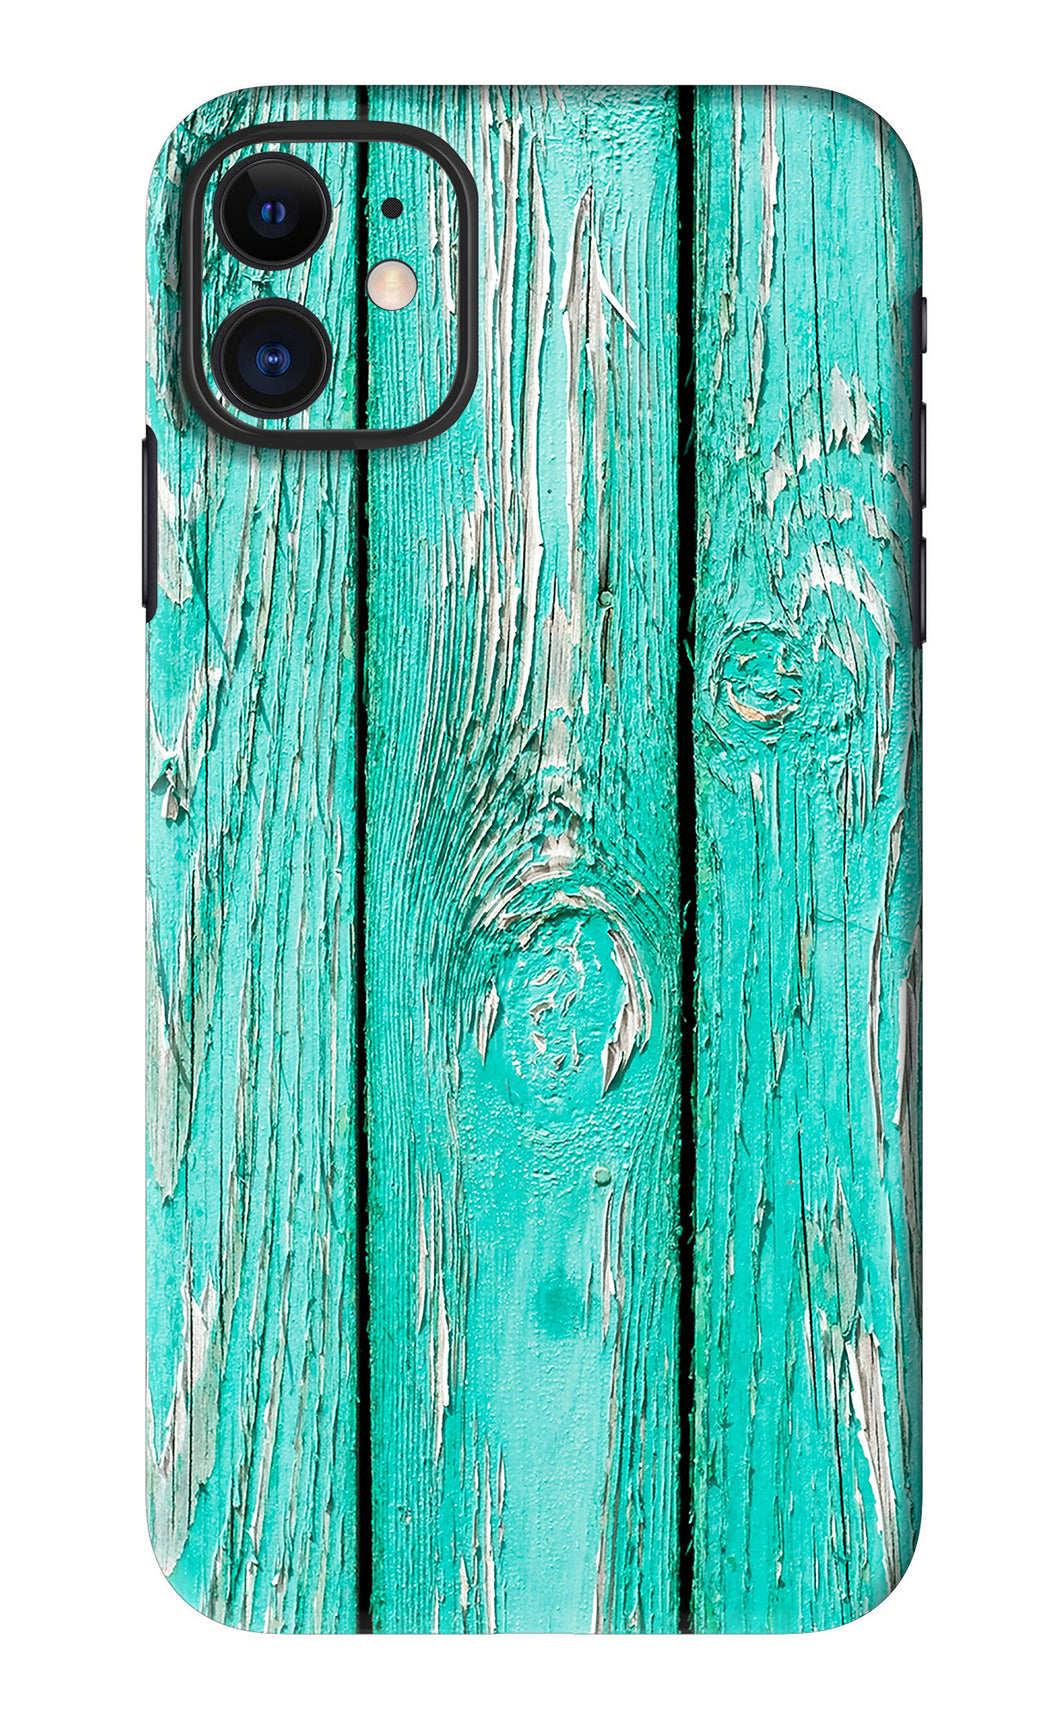 Blue Wood iPhone 11 Back Skin Wrap